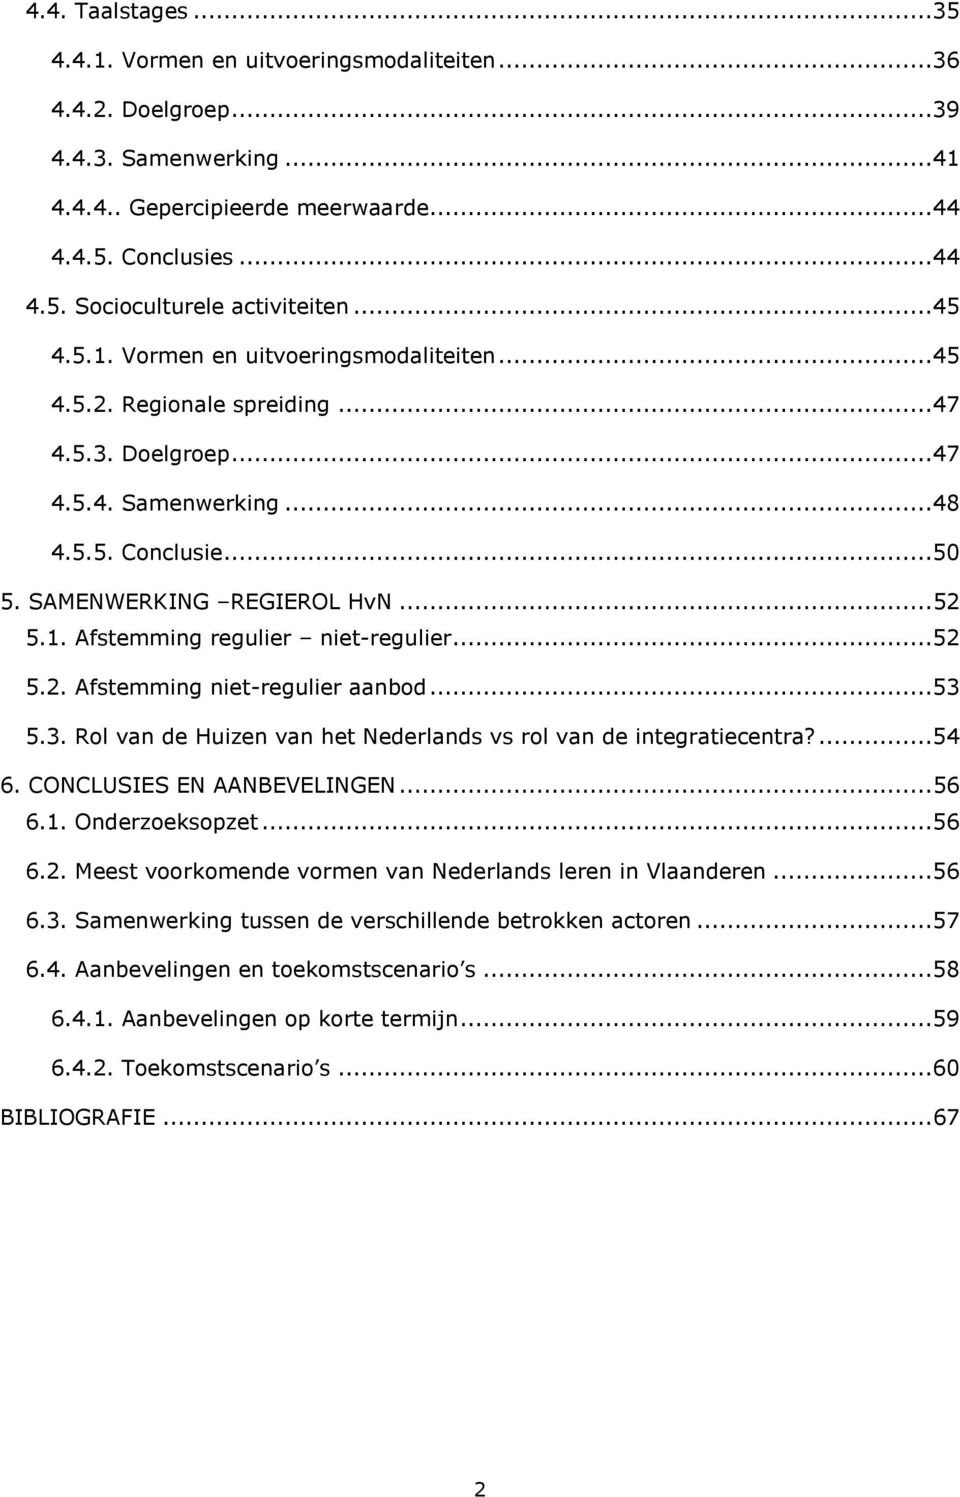 ..52 5.2. Afstemming niet-regulier aanbod...53 5.3. Rol van de Huizen van het Nederlands vs rol van de integratiecentra?...54 6. CONCLUSIES EN AANBEVELINGEN... 56 6.1. Onderzoeksopzet...56 6.2. Meest voorkomende vormen van Nederlands leren in Vlaanderen.